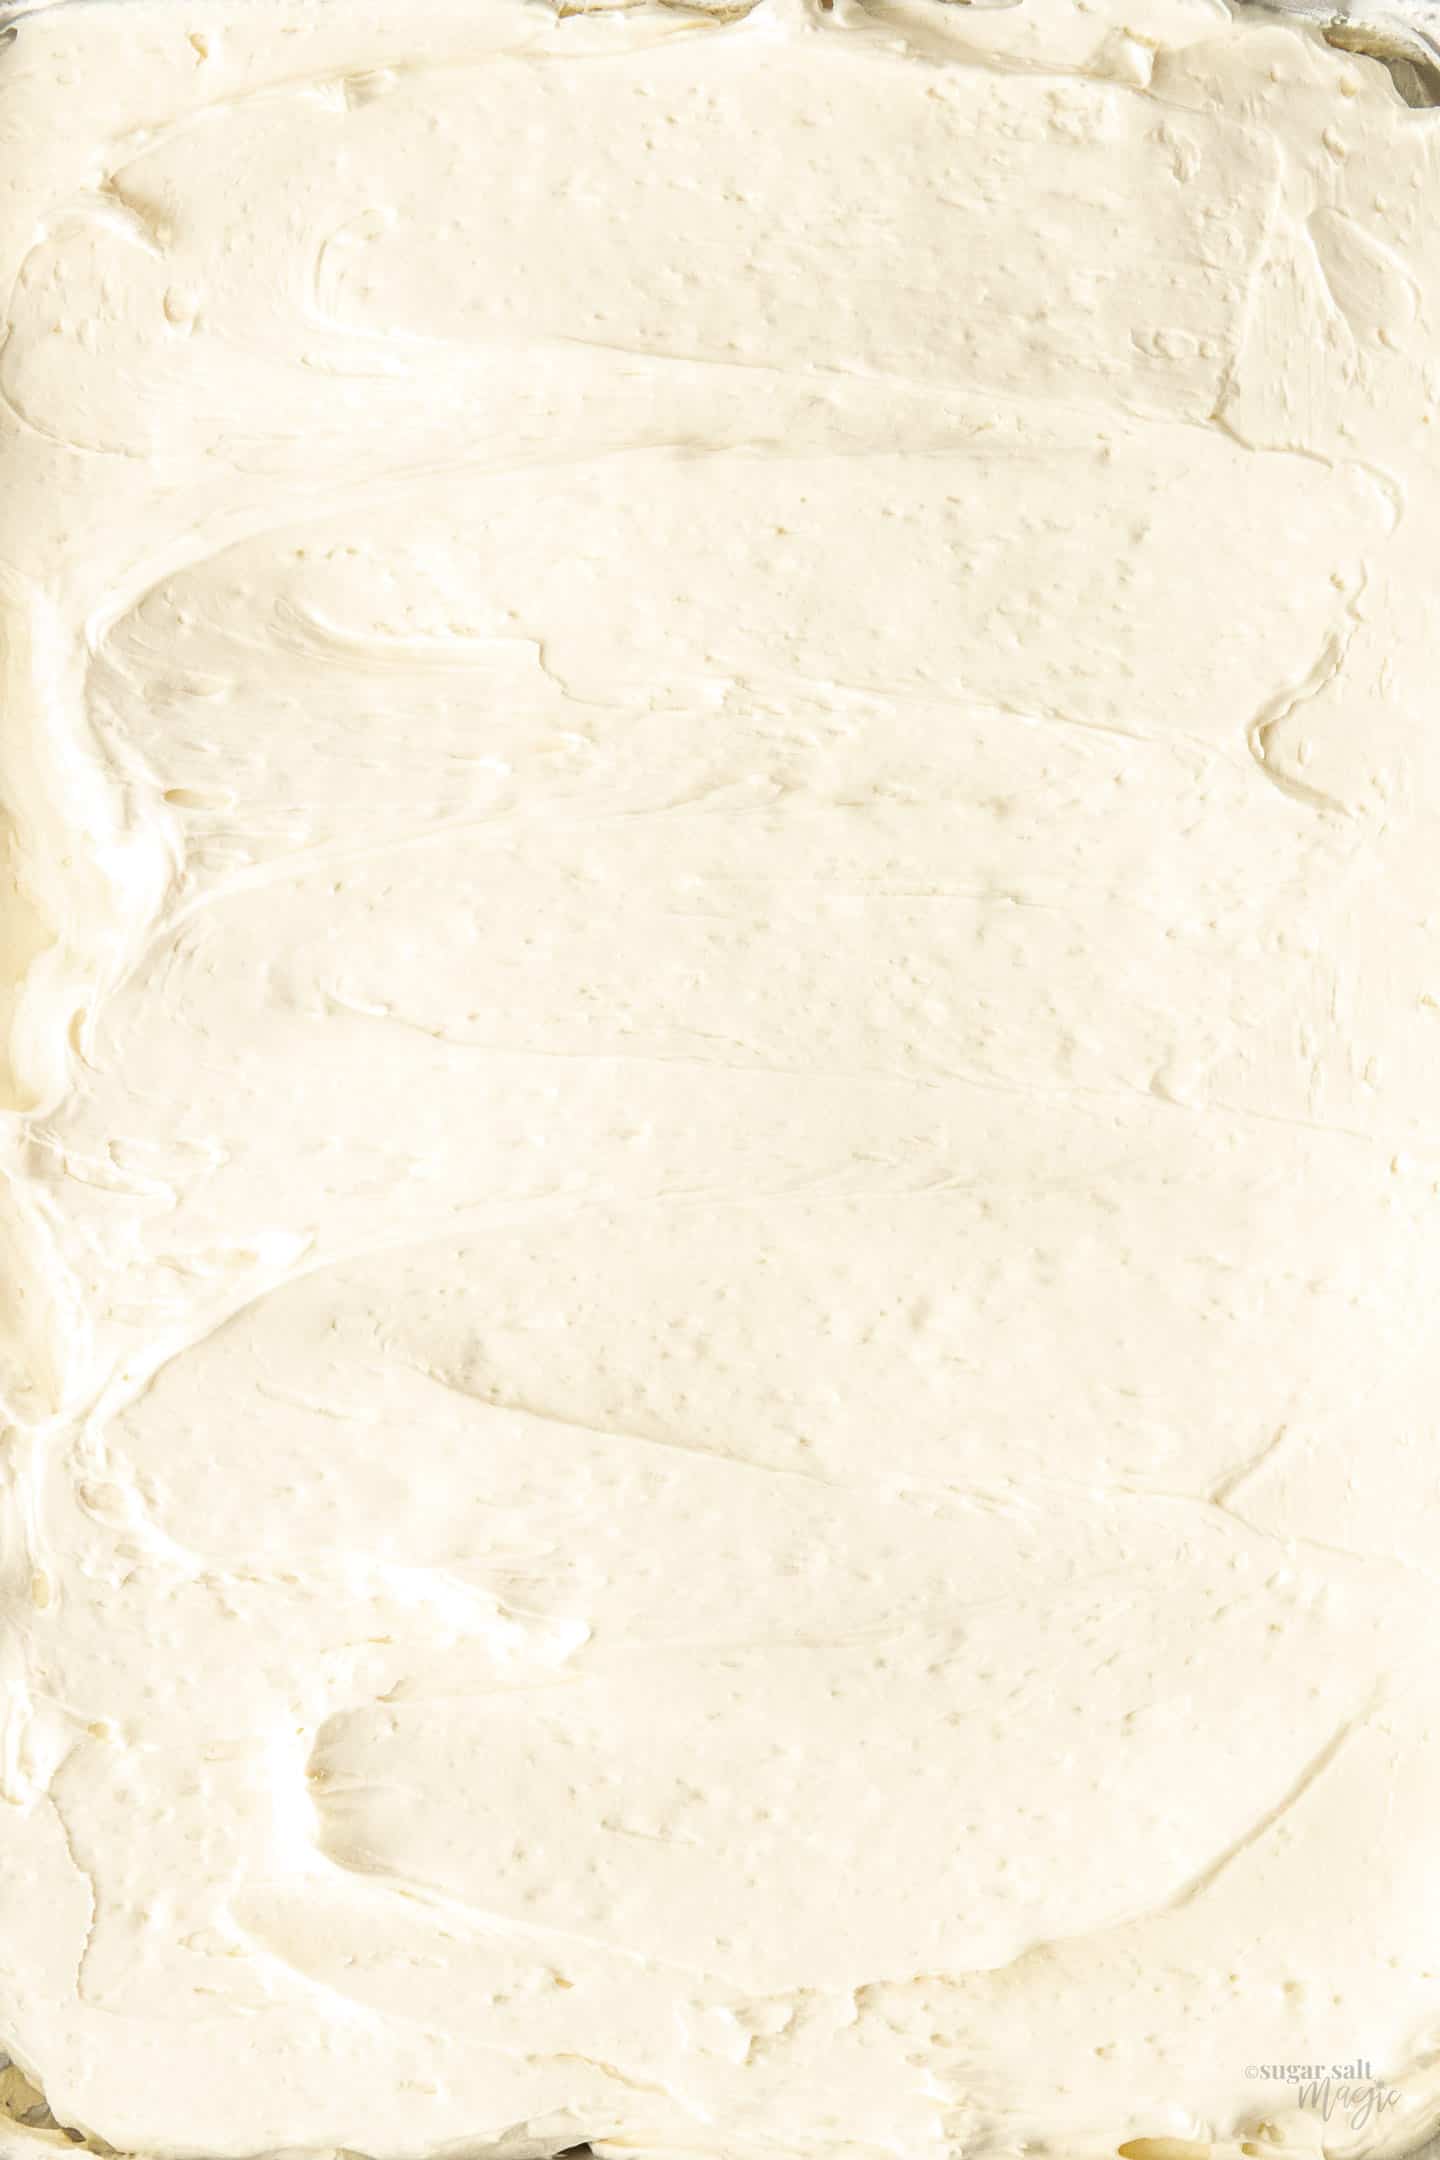 Swirls of Swiss meringue buttercream spread out on tray.